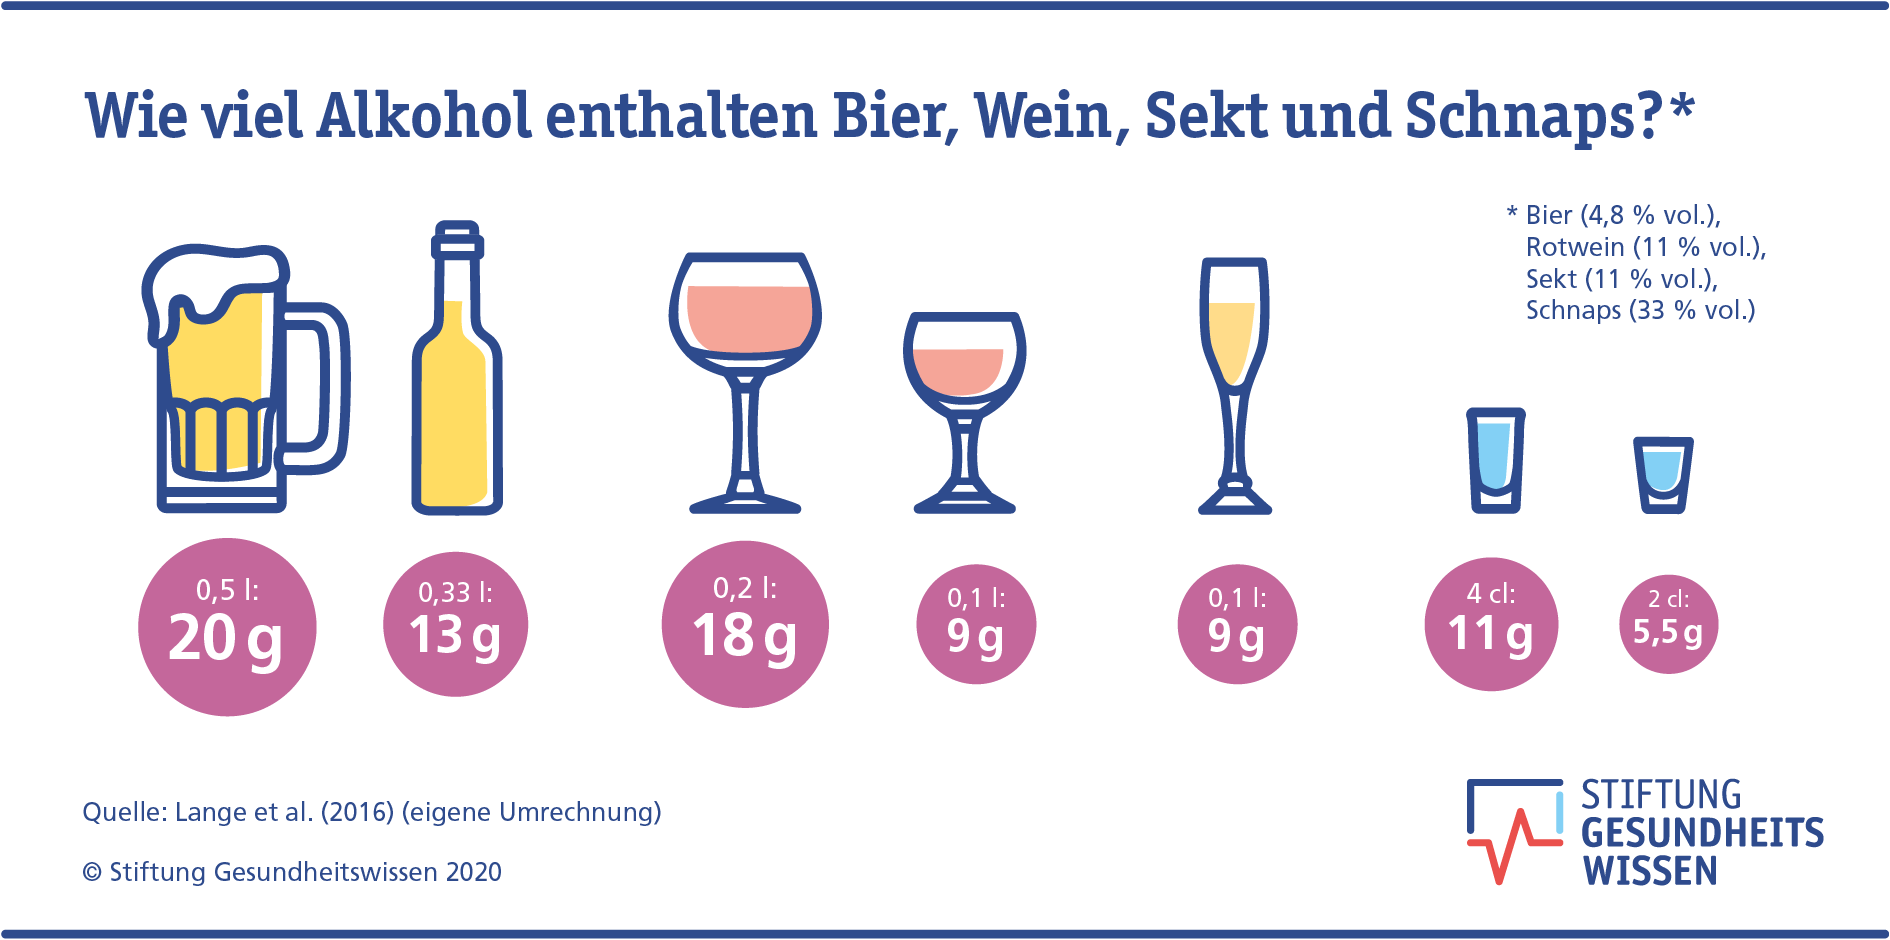 Sucht: Alkoholkonsum ist das größte Problem in Deutschland